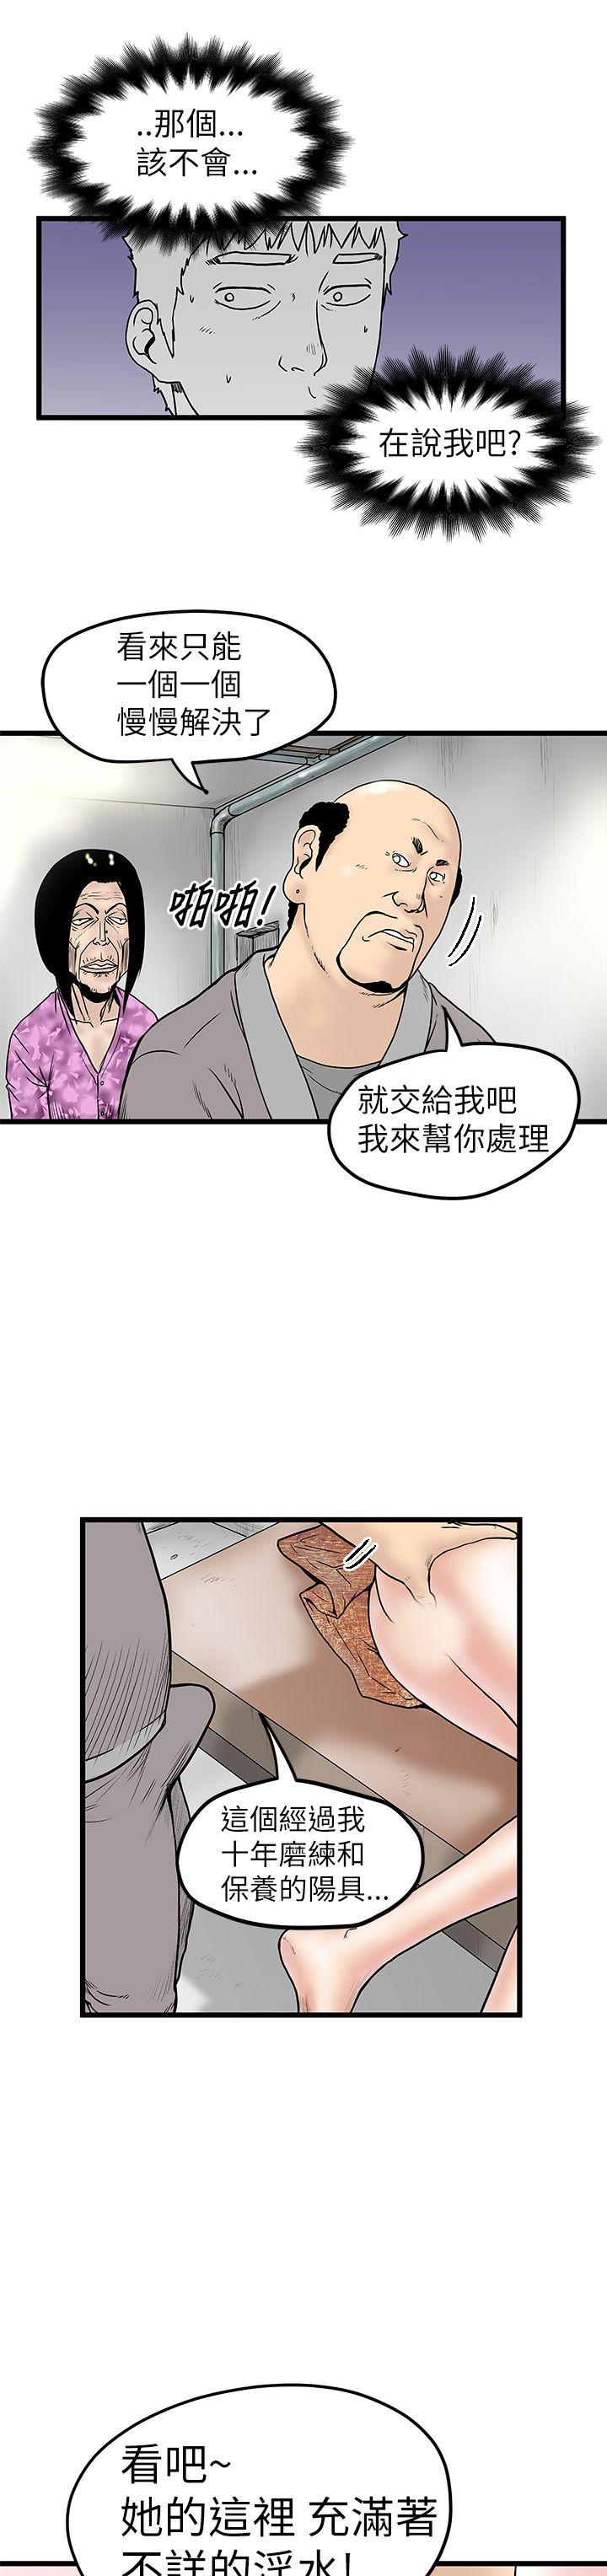 韩国污漫画 想像狂熱 第6话 17